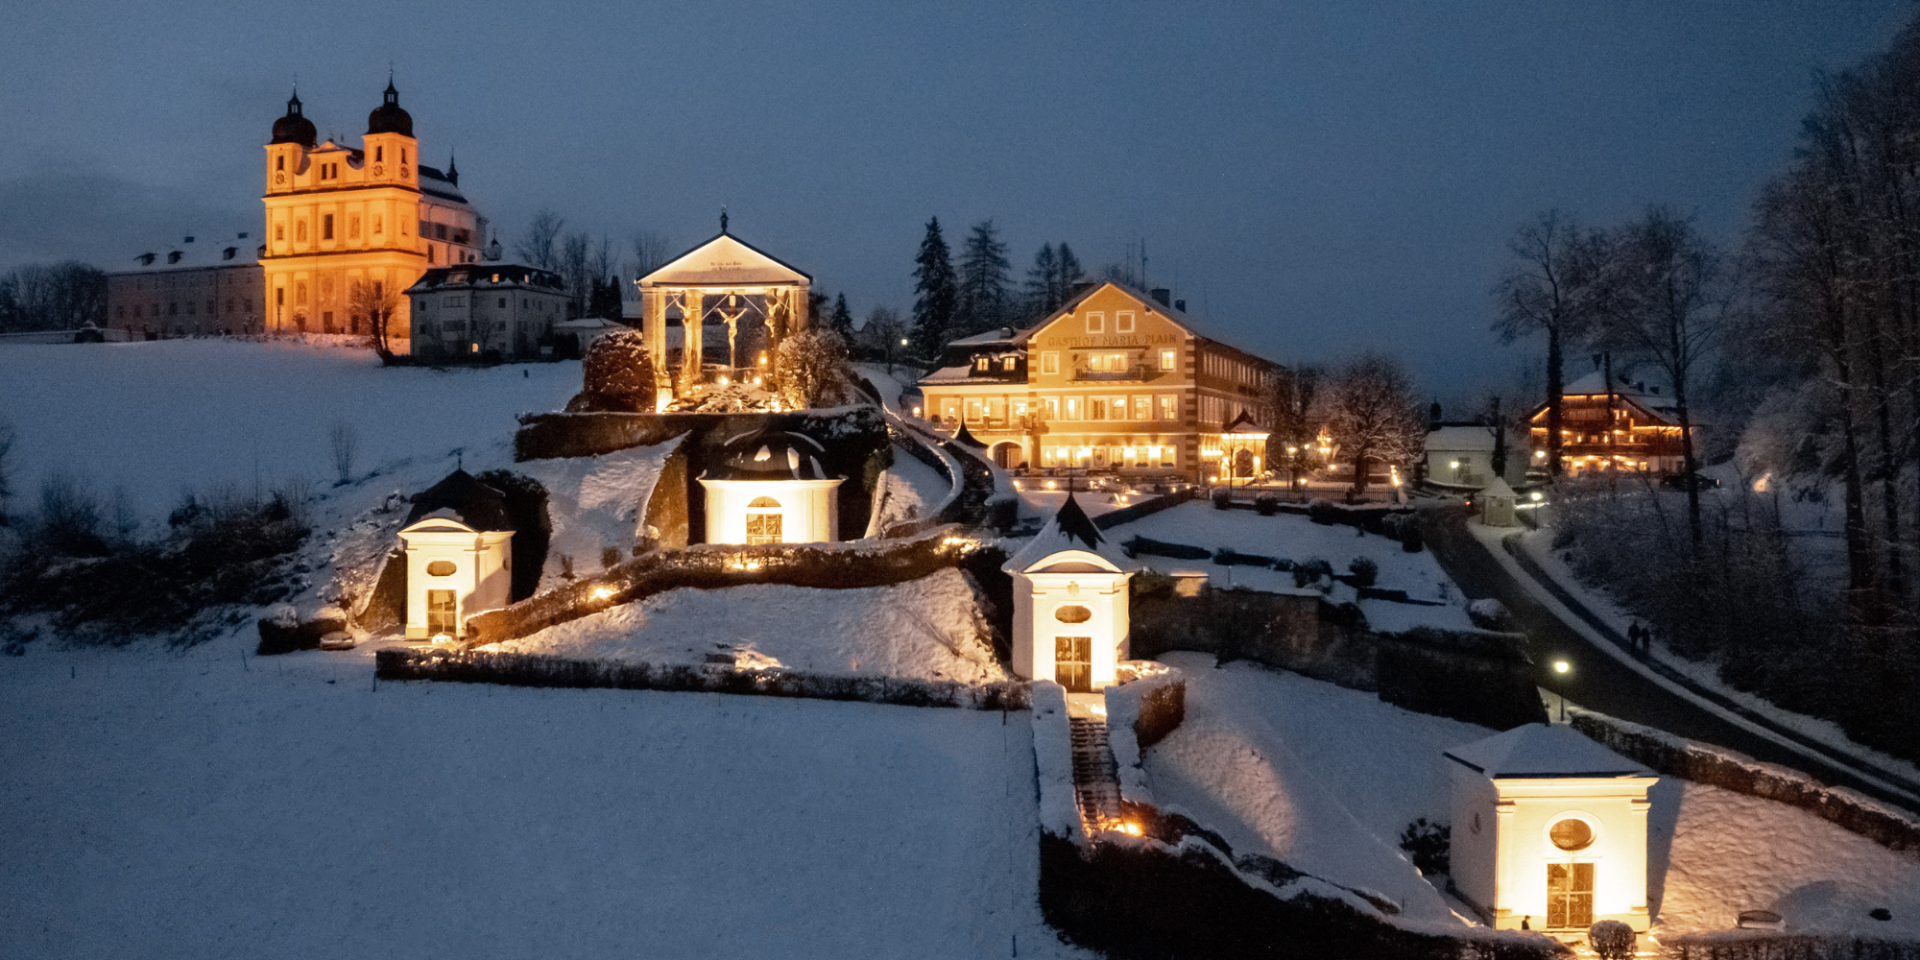 Die Wallfahrtskirche Maria Plain in Salzburg am Abend mit weihnachtlicher Beleuchtung